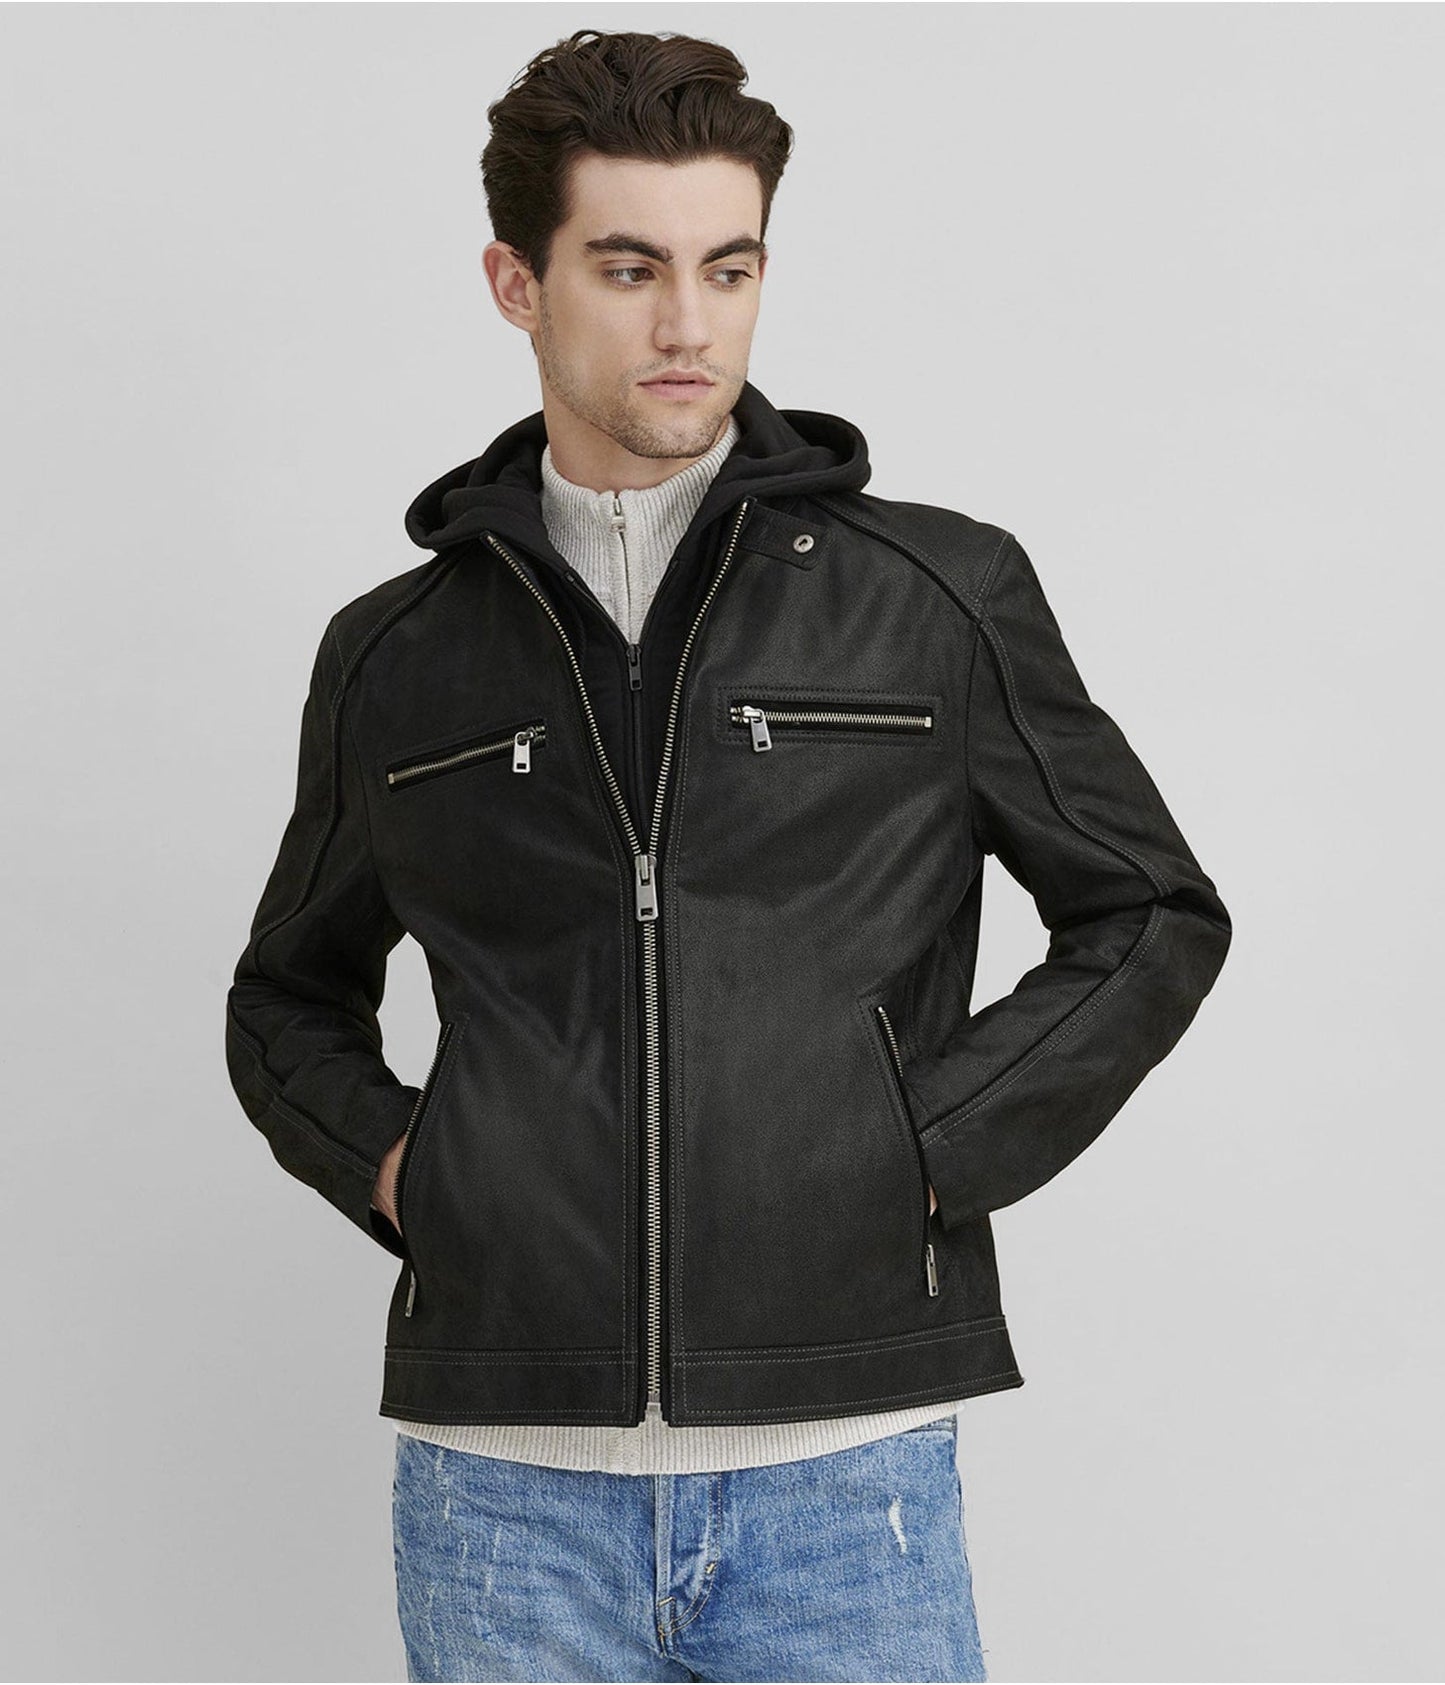 Men's Suede Leather Cafe Racer Jacket In Black